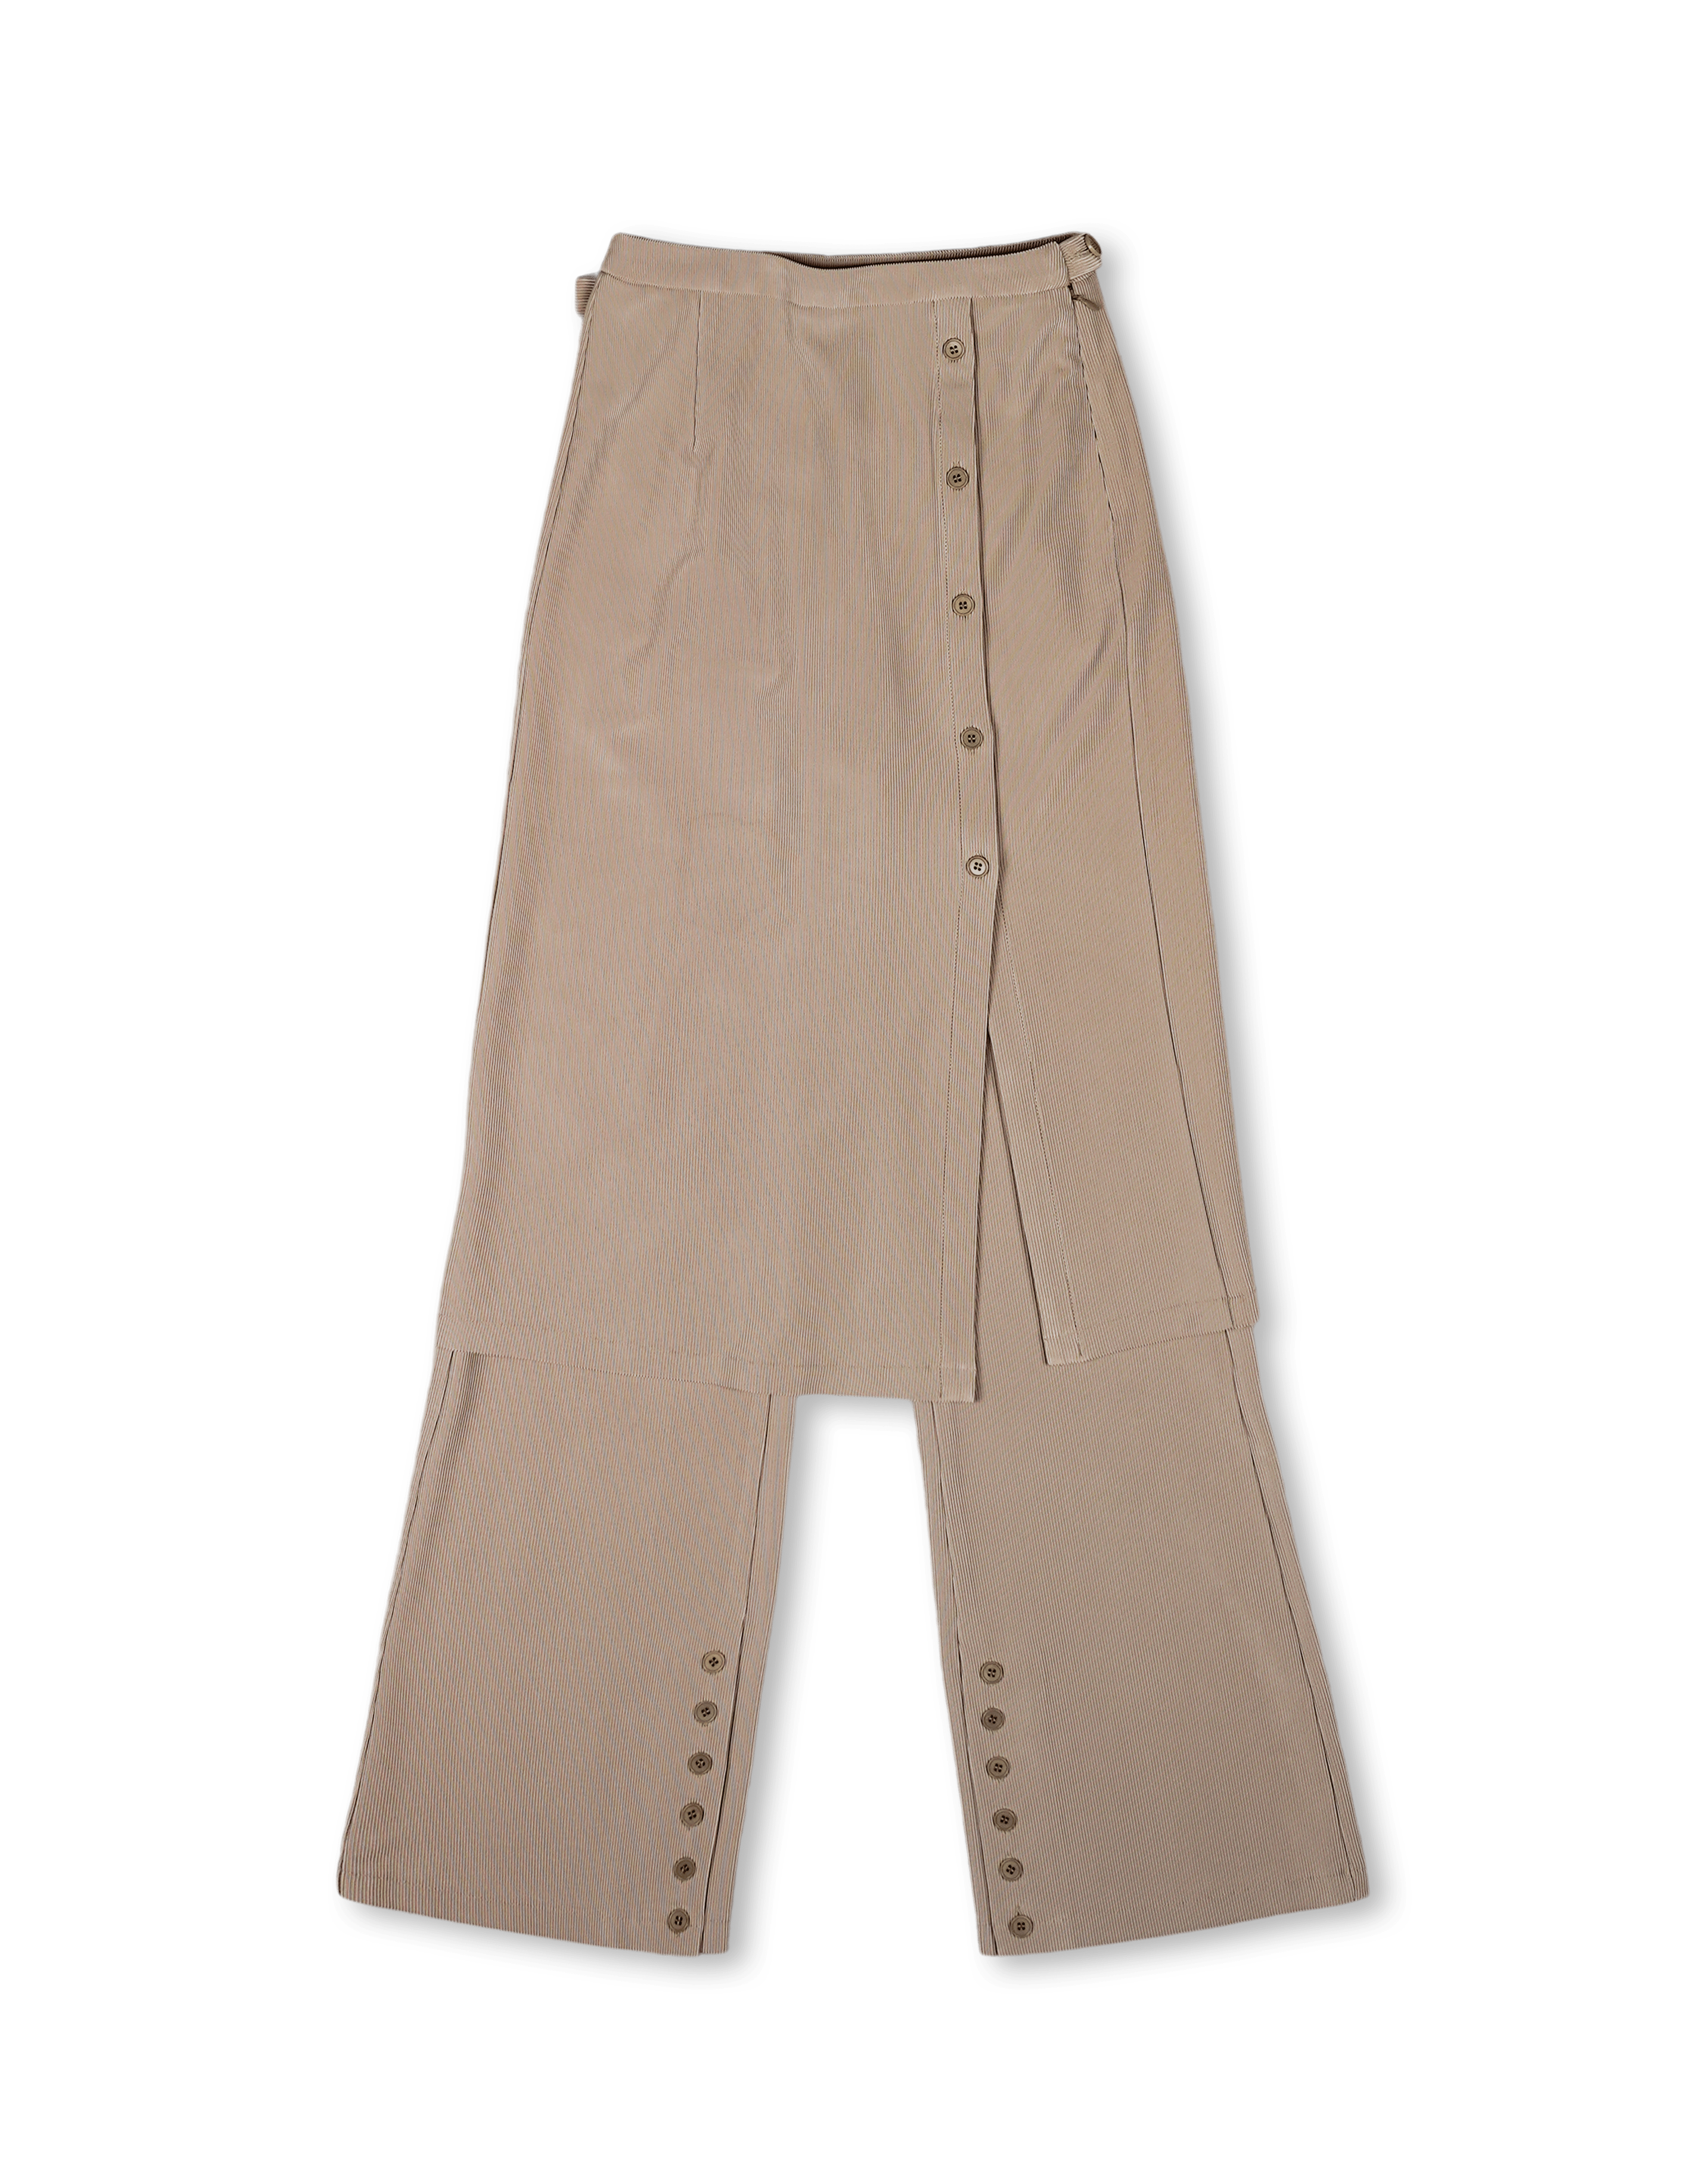 Layered Skirt Pants